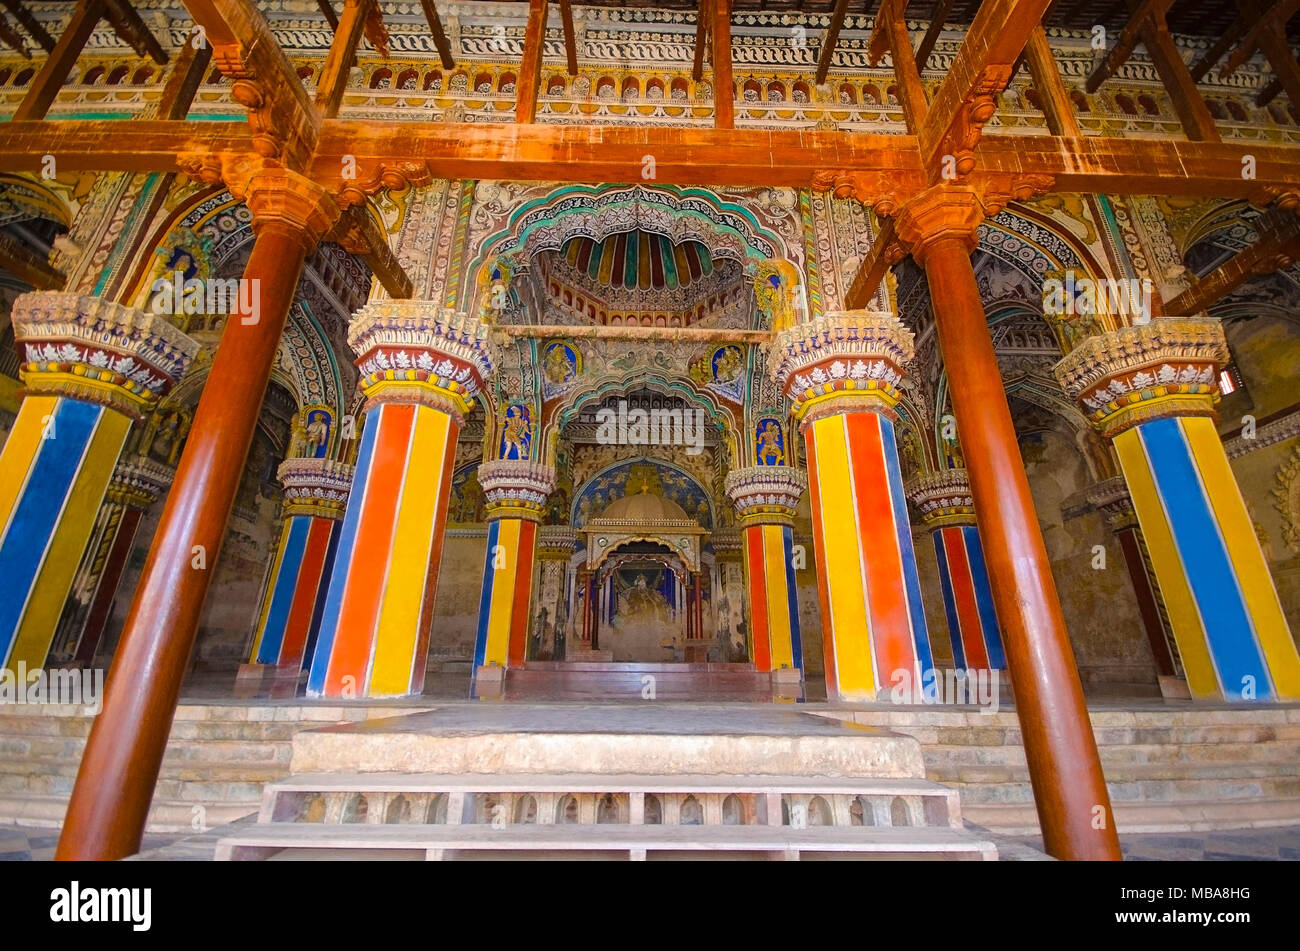 Innenraum des Durbar Hall, Thanjavur Maratha Palace, Thanjavur, Tamil Nadu, Indien. Vor Ort als Wohnsitz der Familie Bhonsle, die über Th ausgeschlossen bekannt Stockfoto